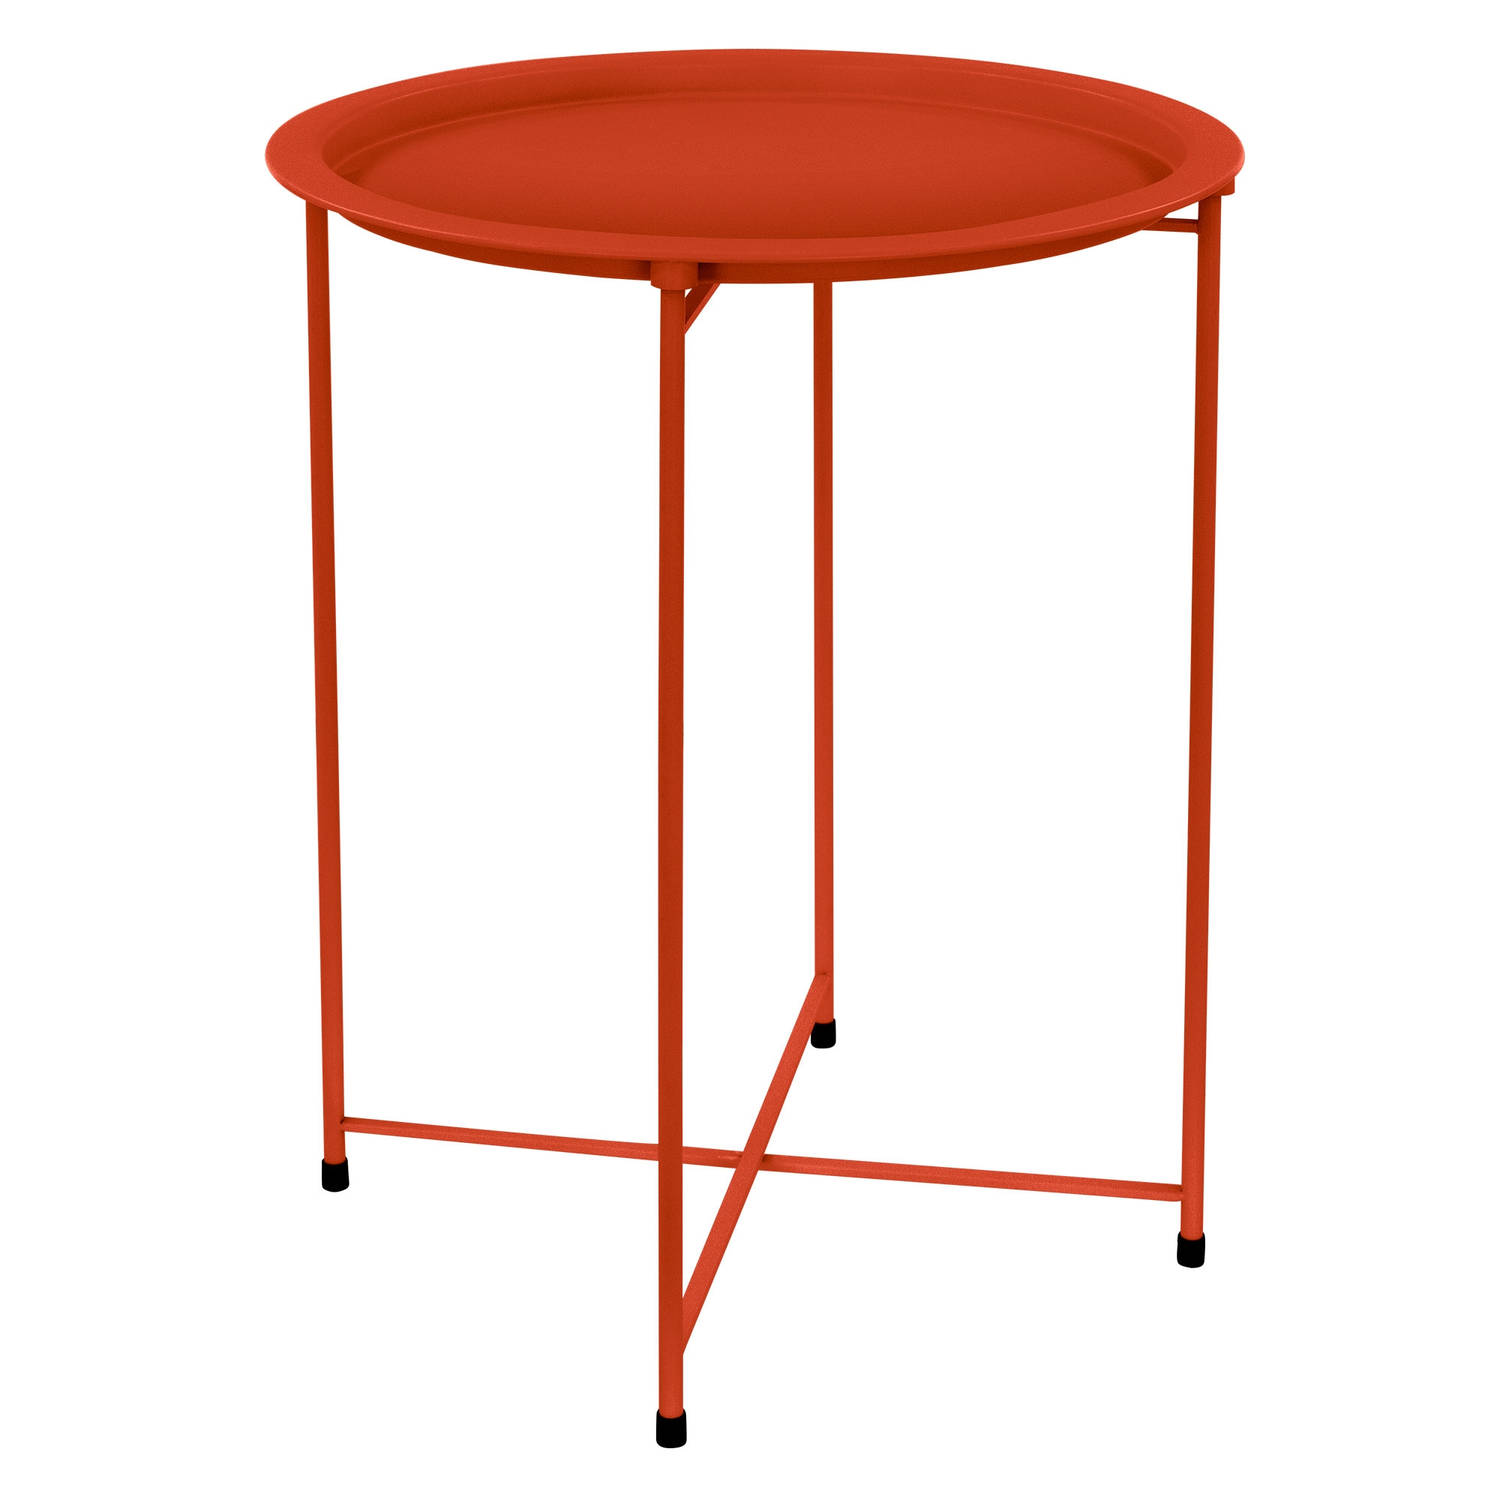 ML-Design Bijzettafel rond Ø43xH52 cm van metaal, rood, salontafel met afneembaar dienblad, inklapbaar, stabiel, woonkamertafel salontafel nachtkastje tuintafel, voor drankjes & sn